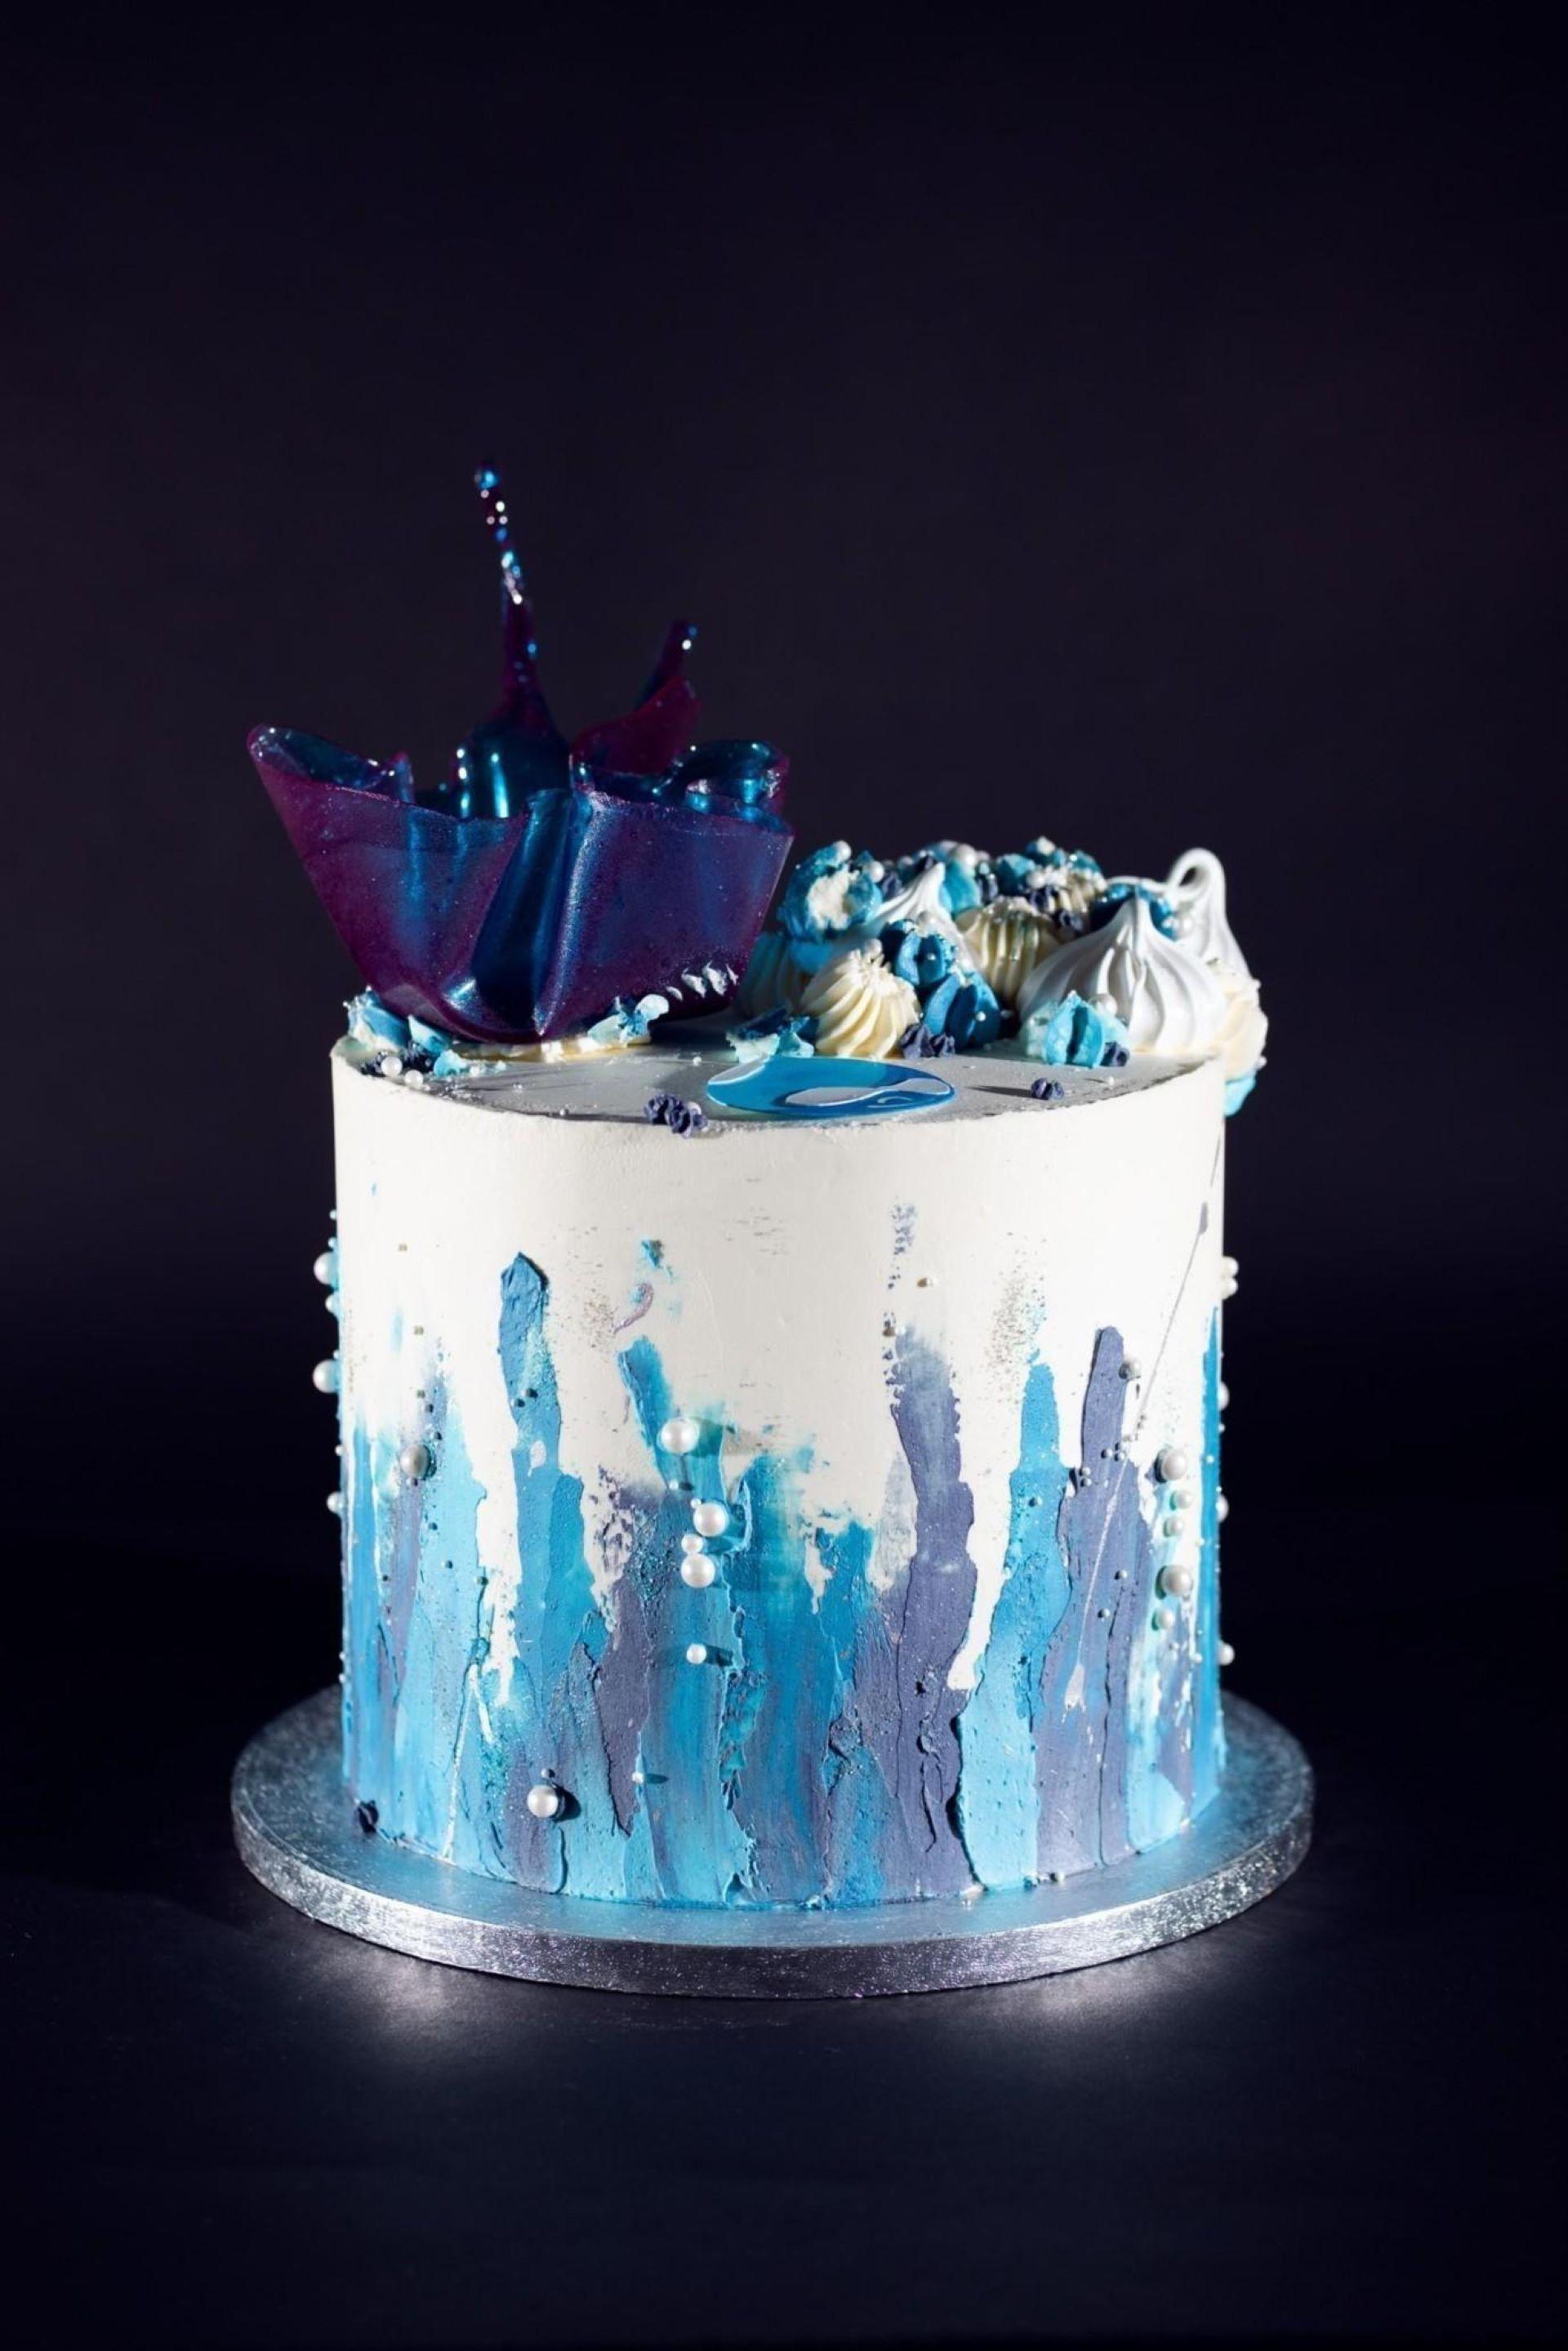 Drupal-themed fancy cake